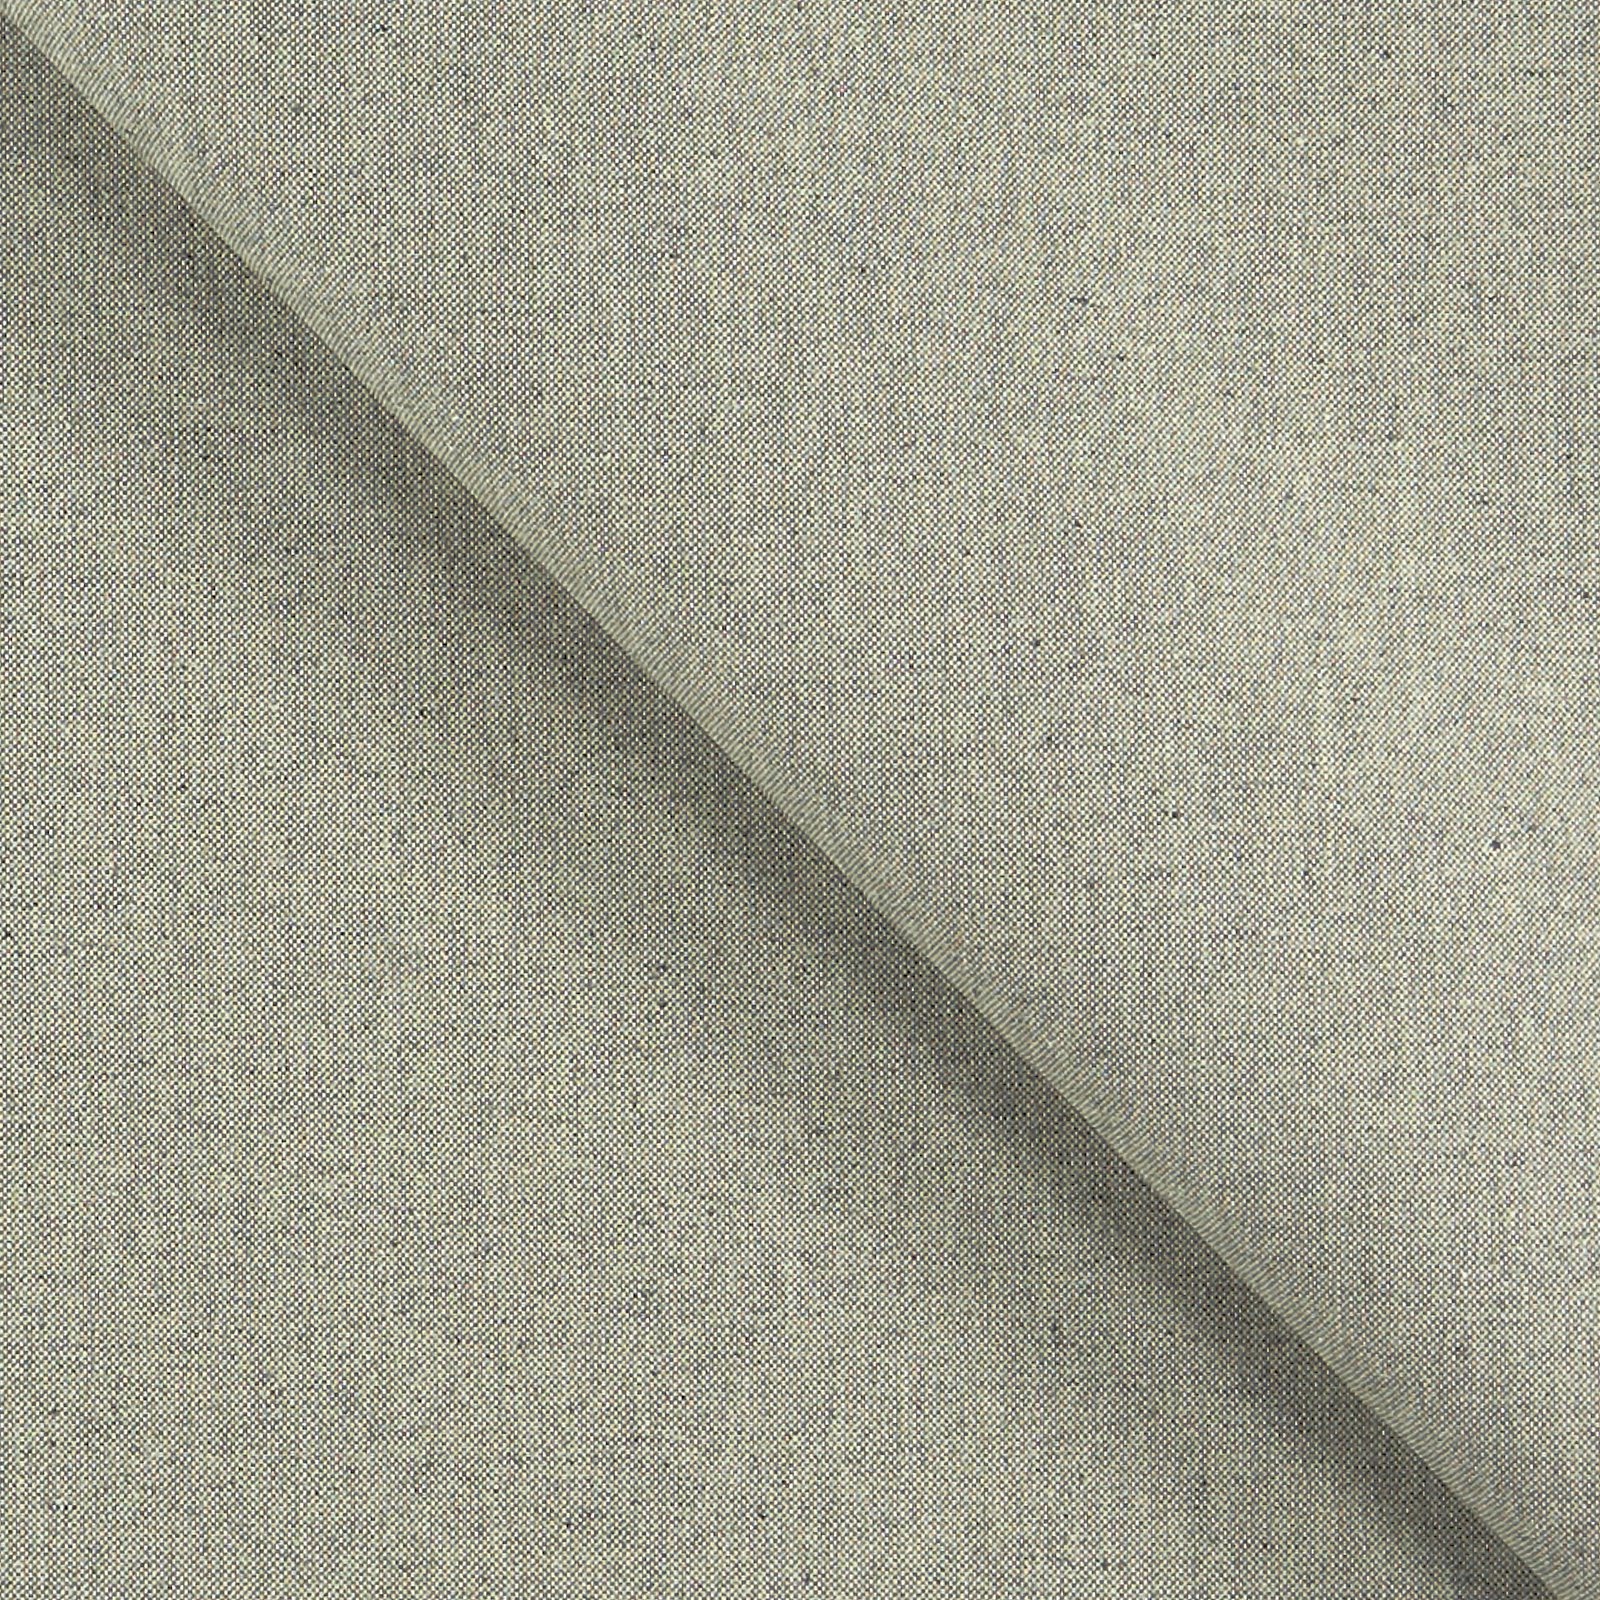 Tekstilvoksduk Linlook/grå 870285_pack